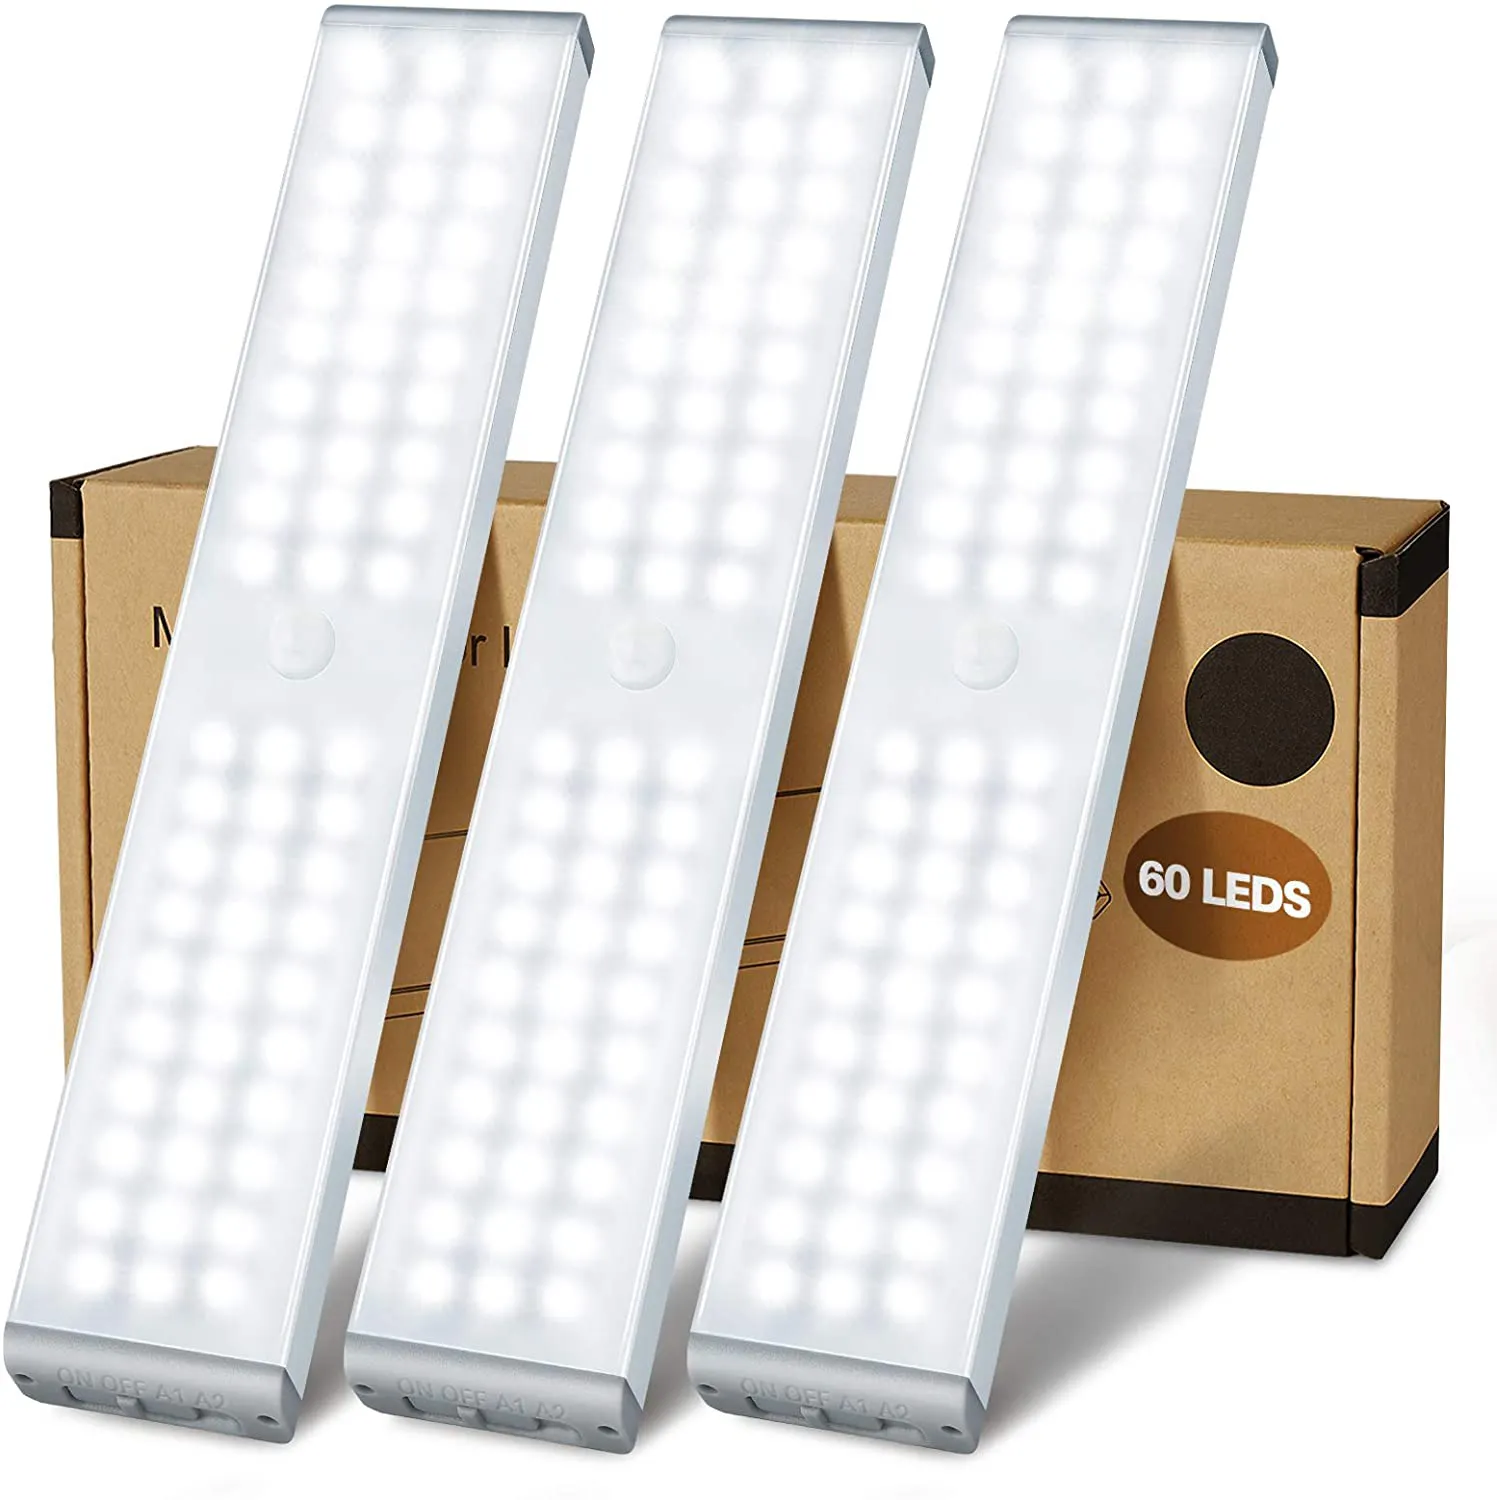 motion sensor 3 row led light bar cool white for closet cabinet amazon top seller 2022 cabinet light motion sensor